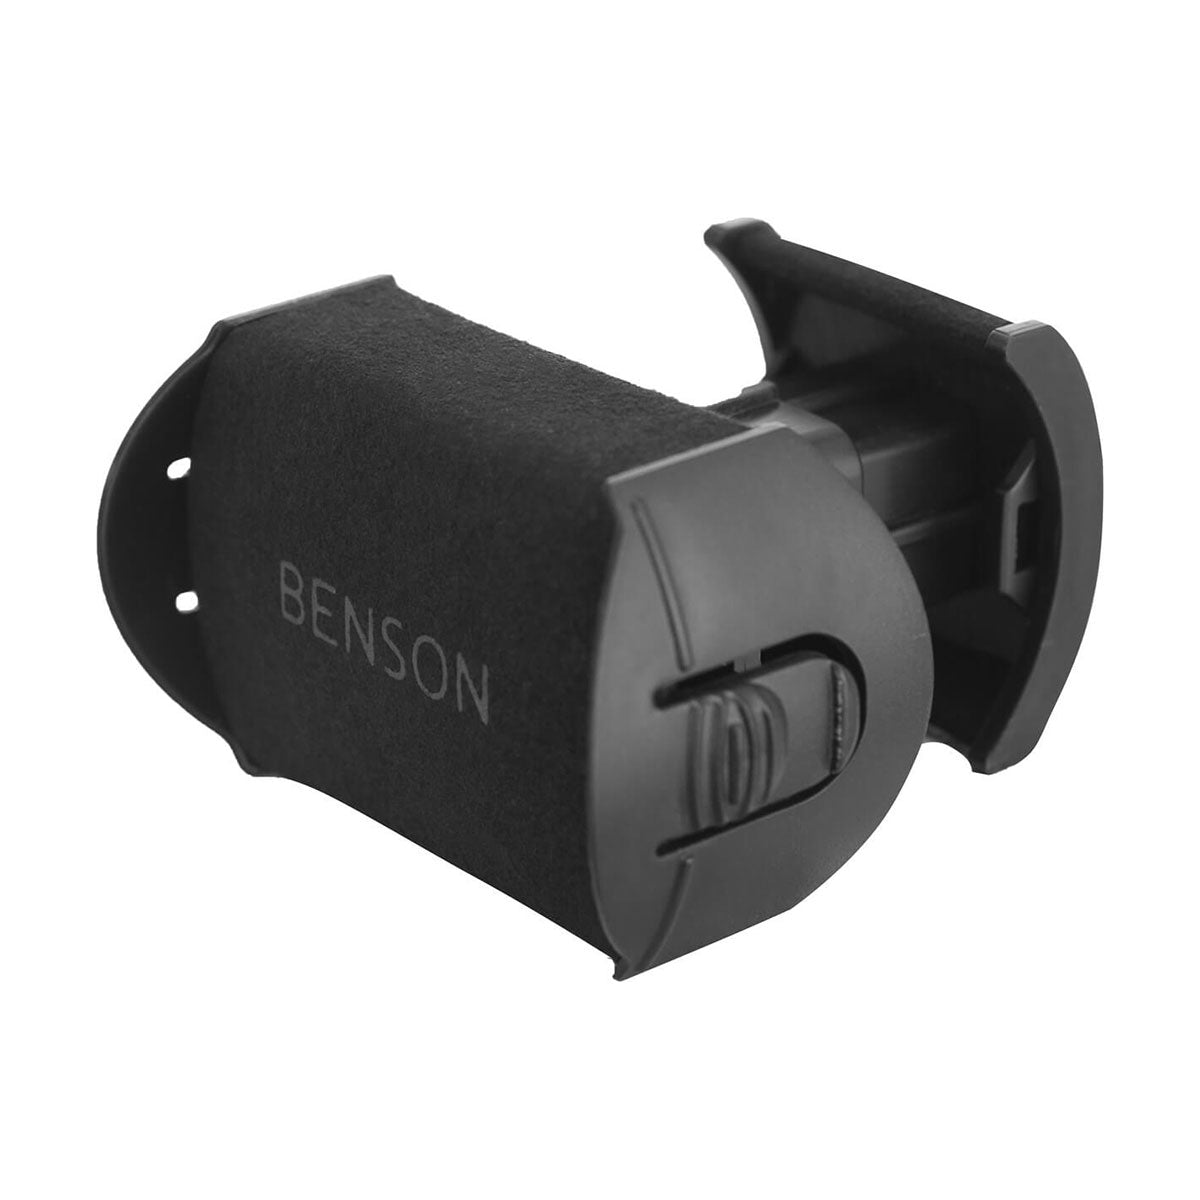 Benson Black Series 4.16 - Watchwinder for 4 watches